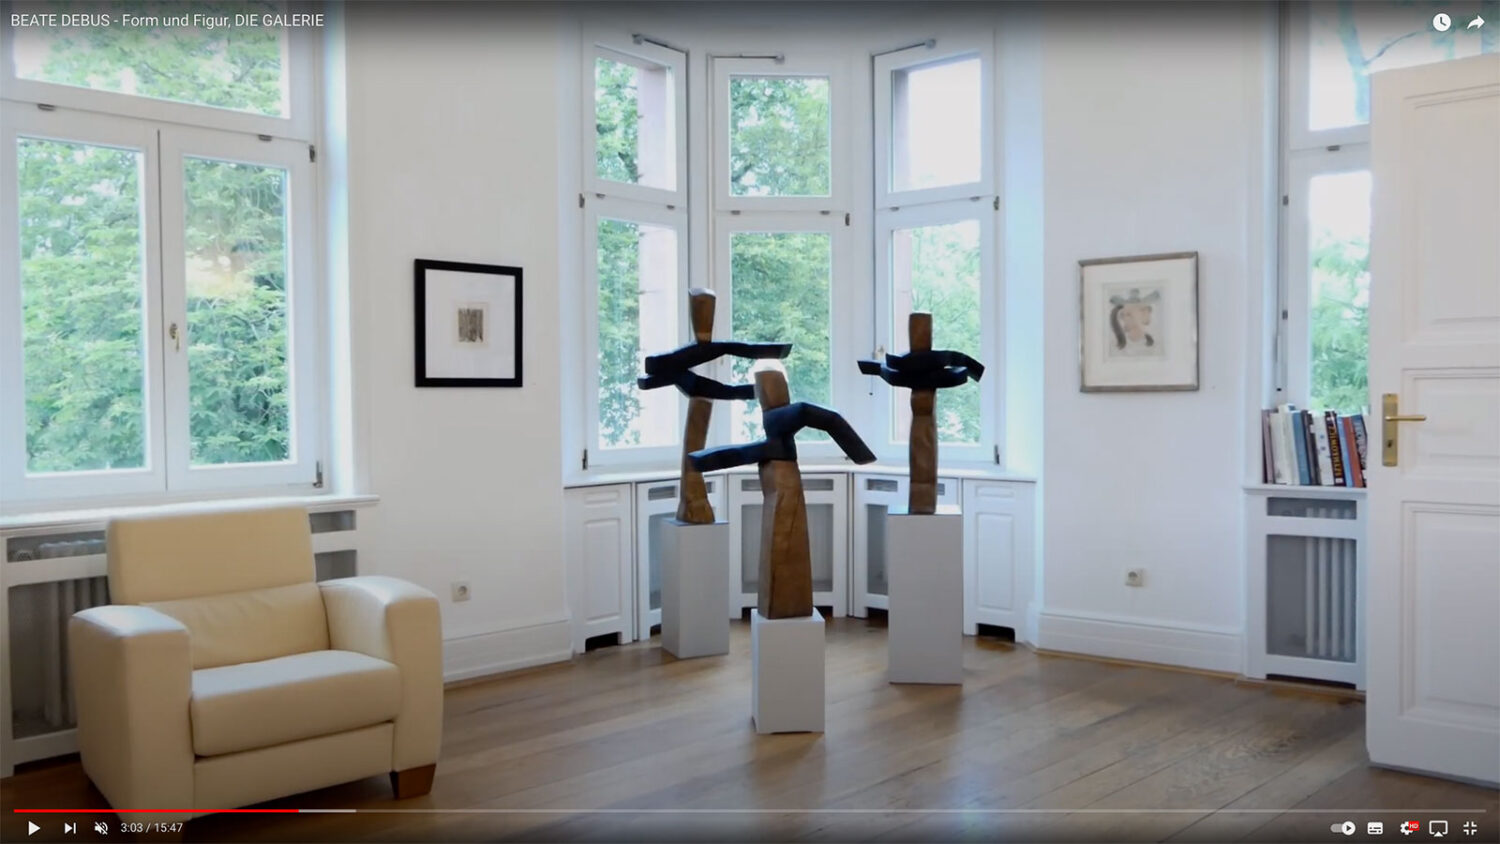 YouTube-Video: Beate Debus - Form und Figur (Ausstellung Die Galerie Frankfurt/Main 2020)